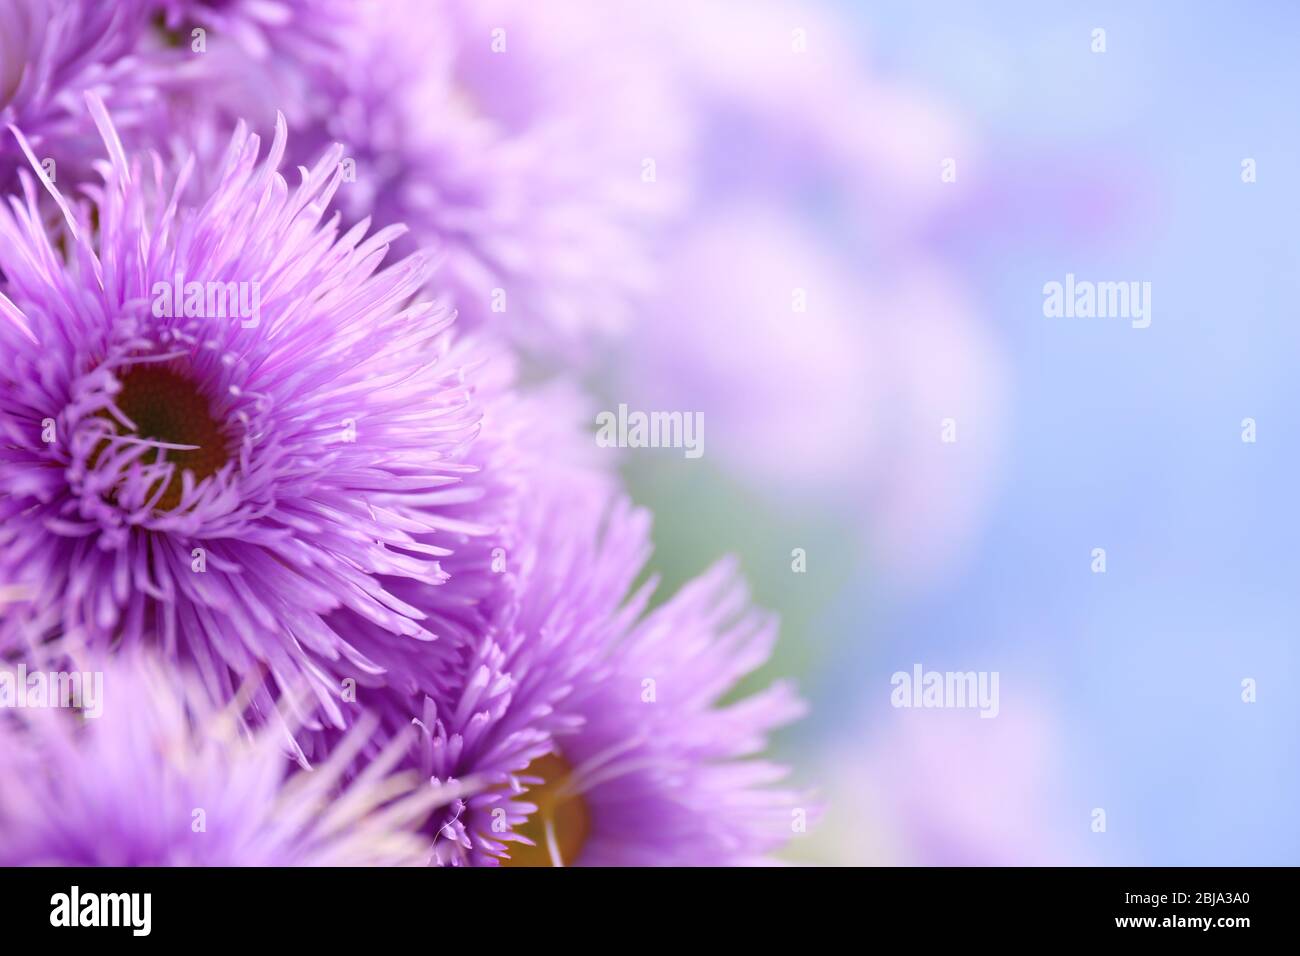 Magnifiques daisies violettes, gros plan Banque D'Images